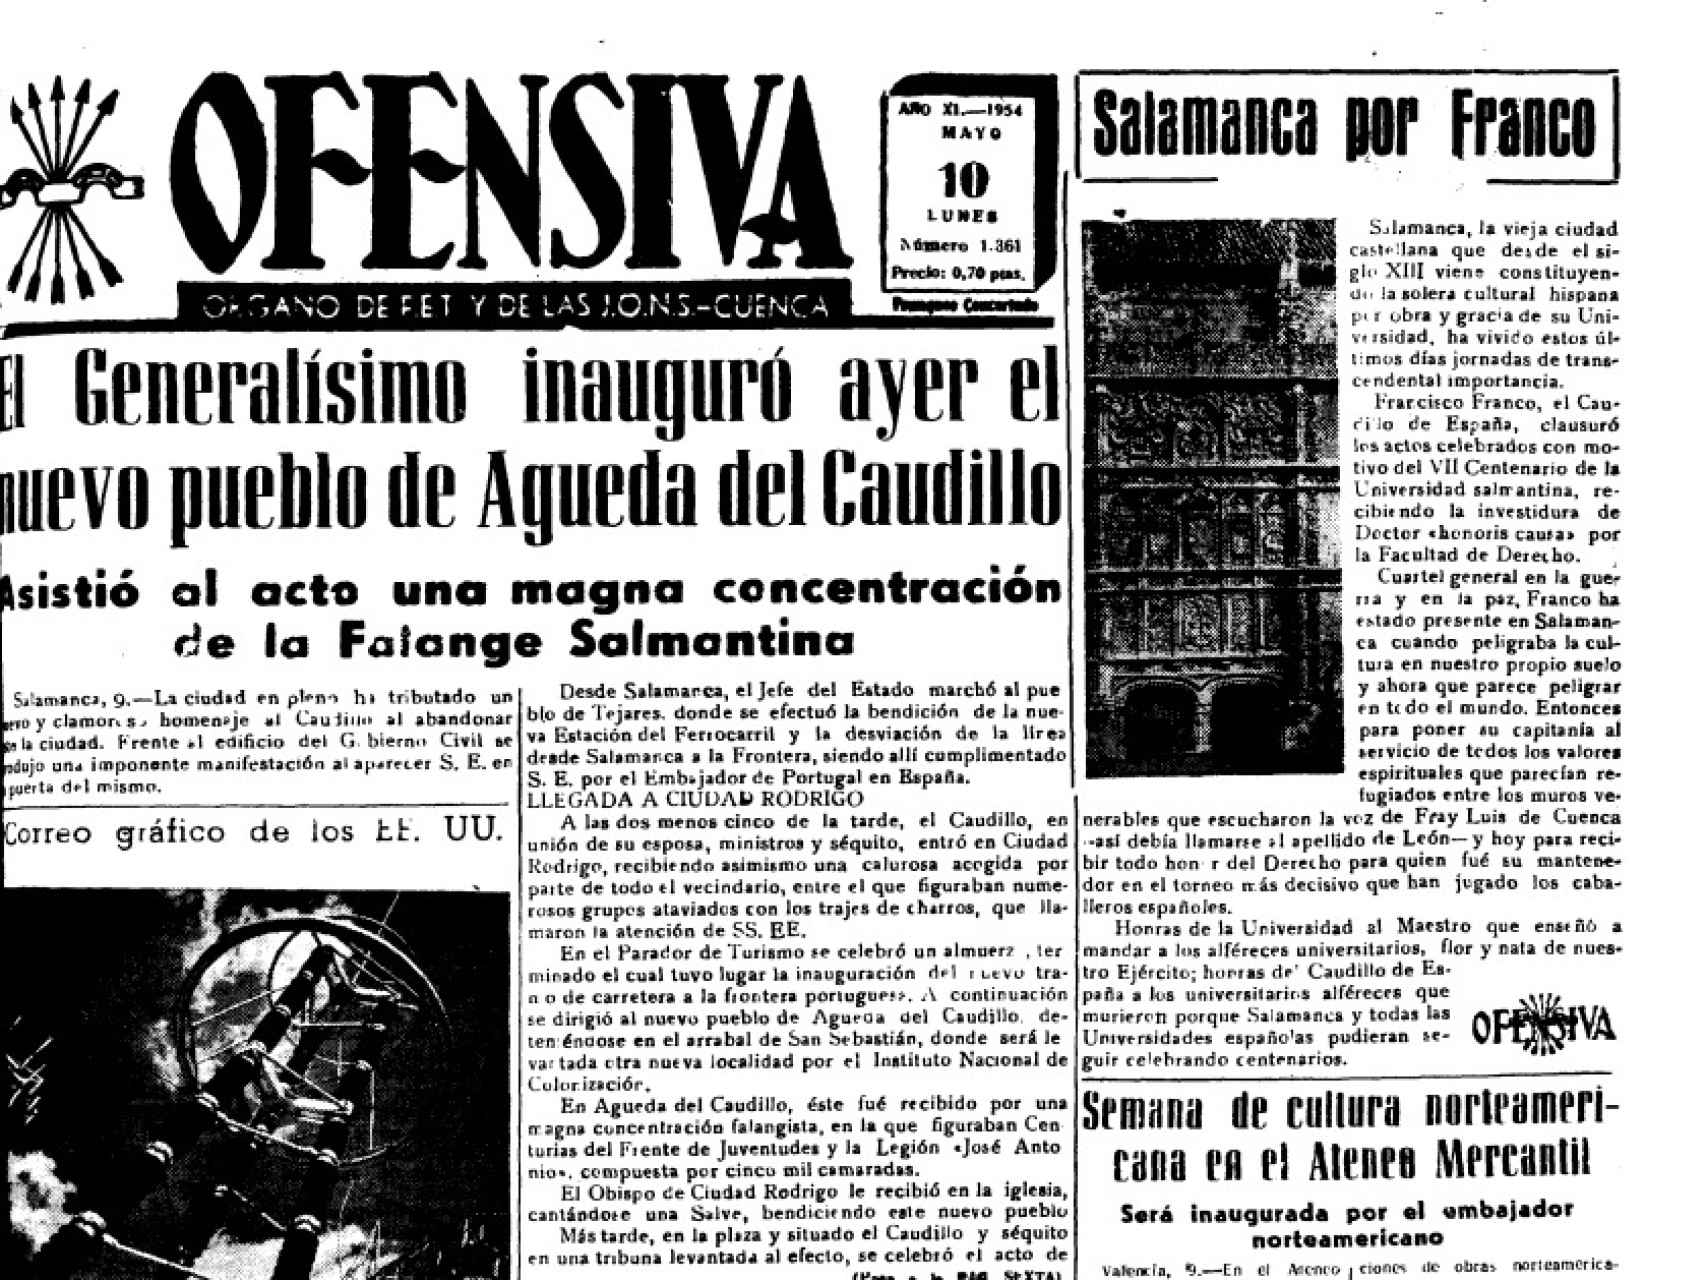 En los diarios de la época, como en esta publicación de Ofensiva se alababa el acto del dictador al día siguiente de la inauguración del pueblo.